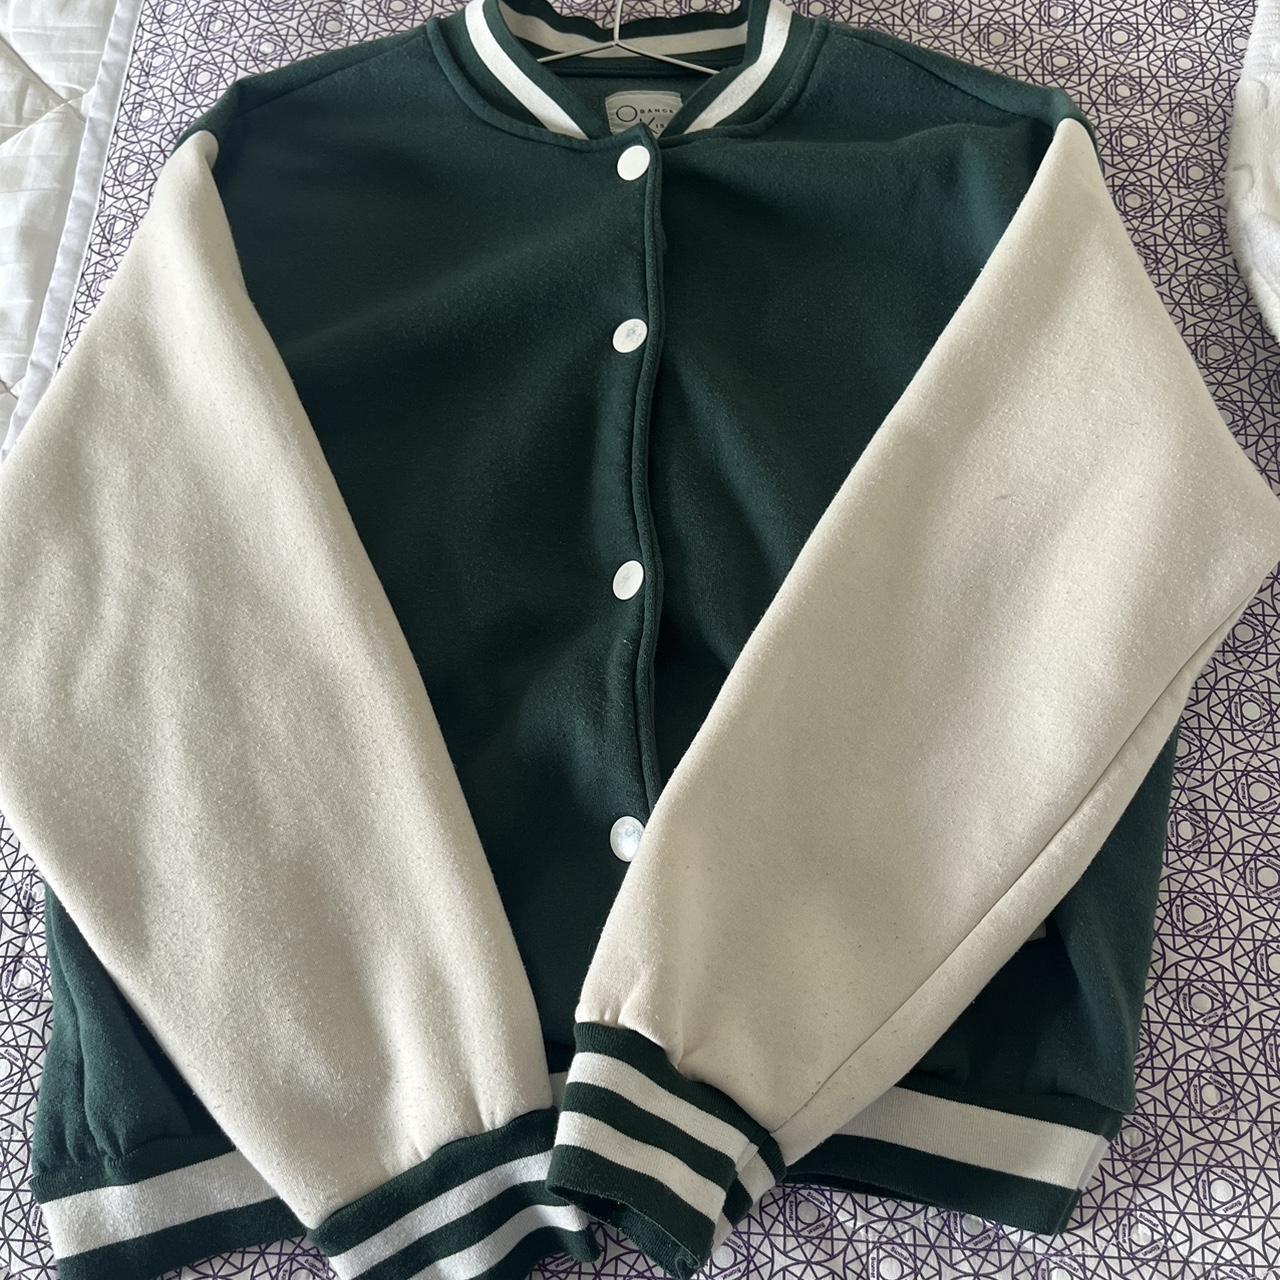 green varisty/basball jacket - Depop